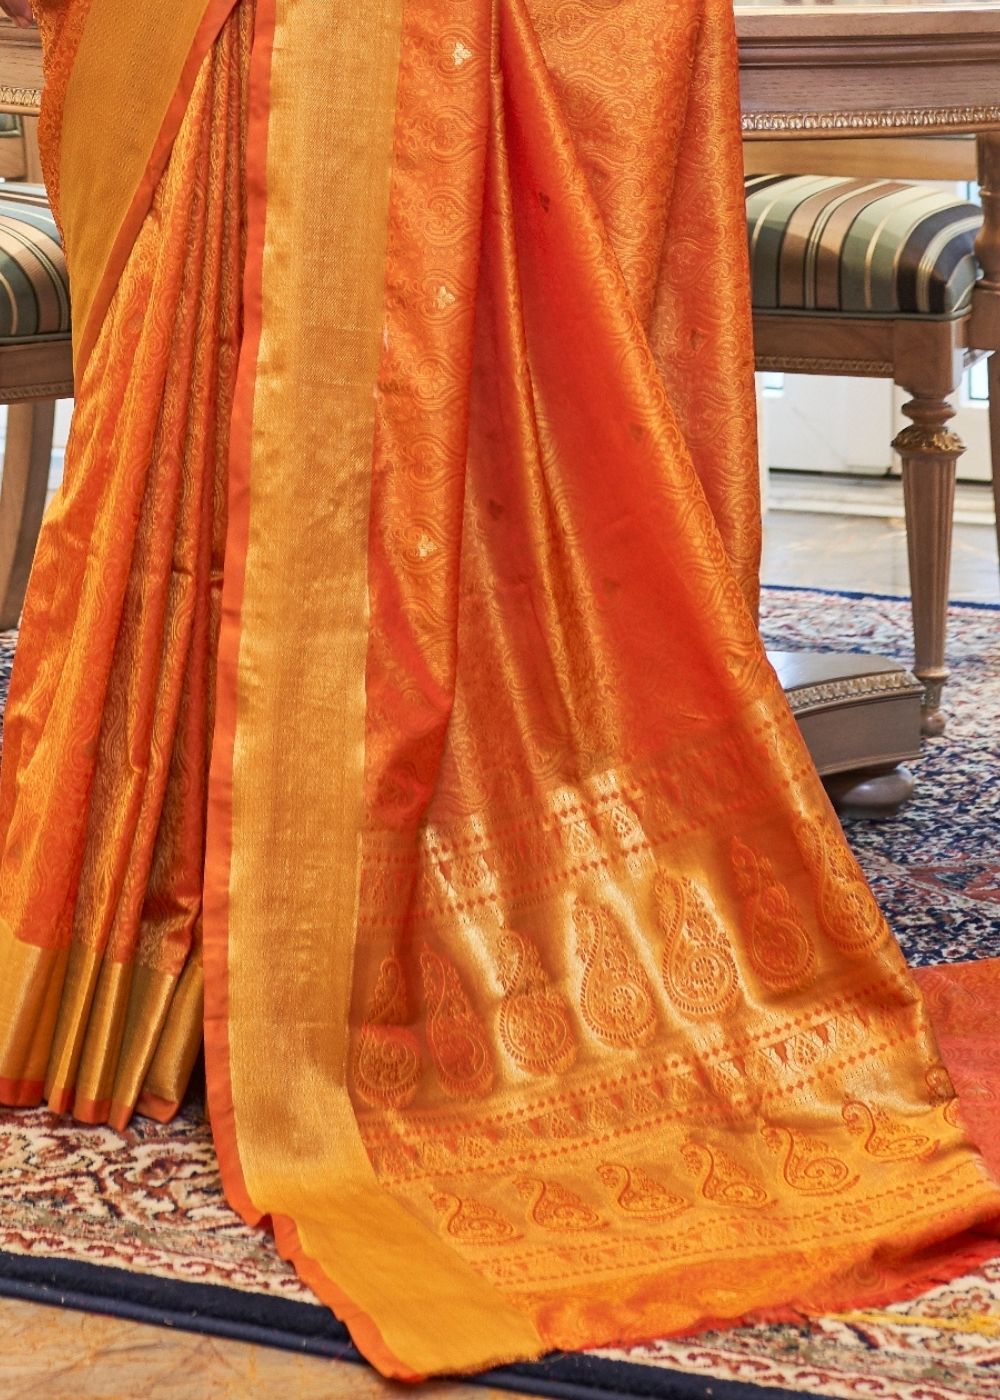 Pumpkin Orange Ultra Soft Kanjivaram Silk Saree with Zari Border and Pallu - Colorful Saree